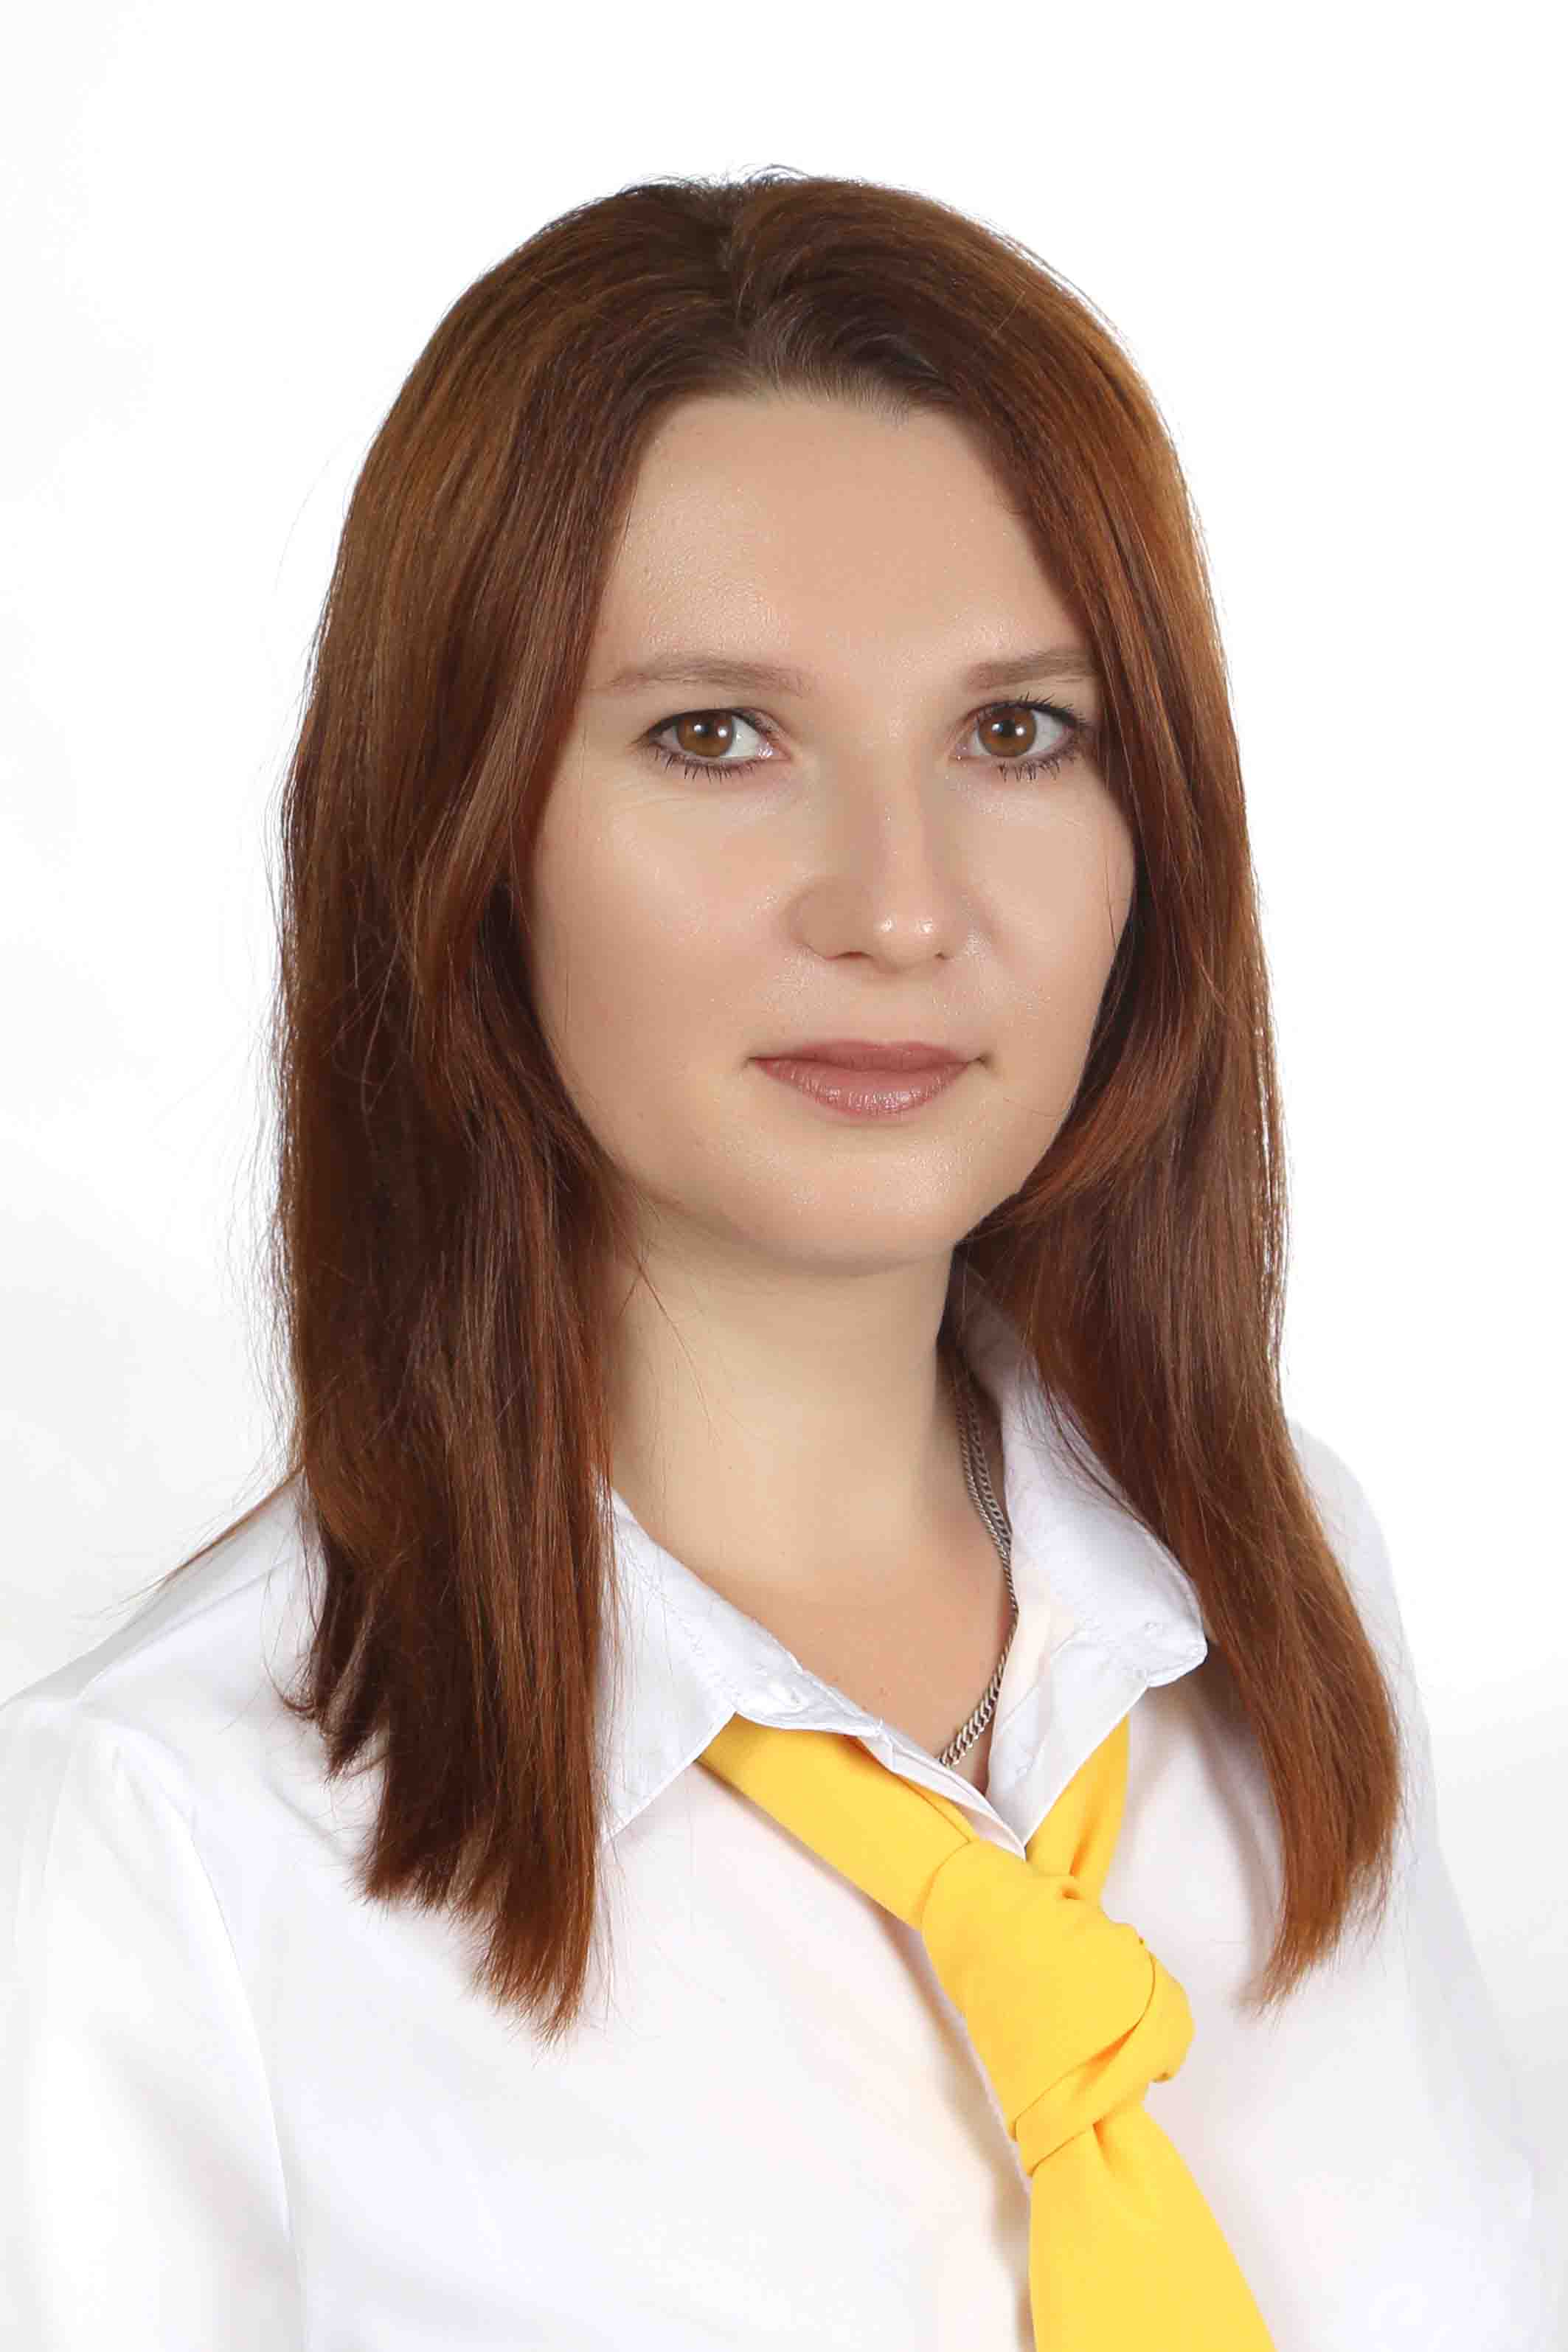 Макарова Марина Николаевна.